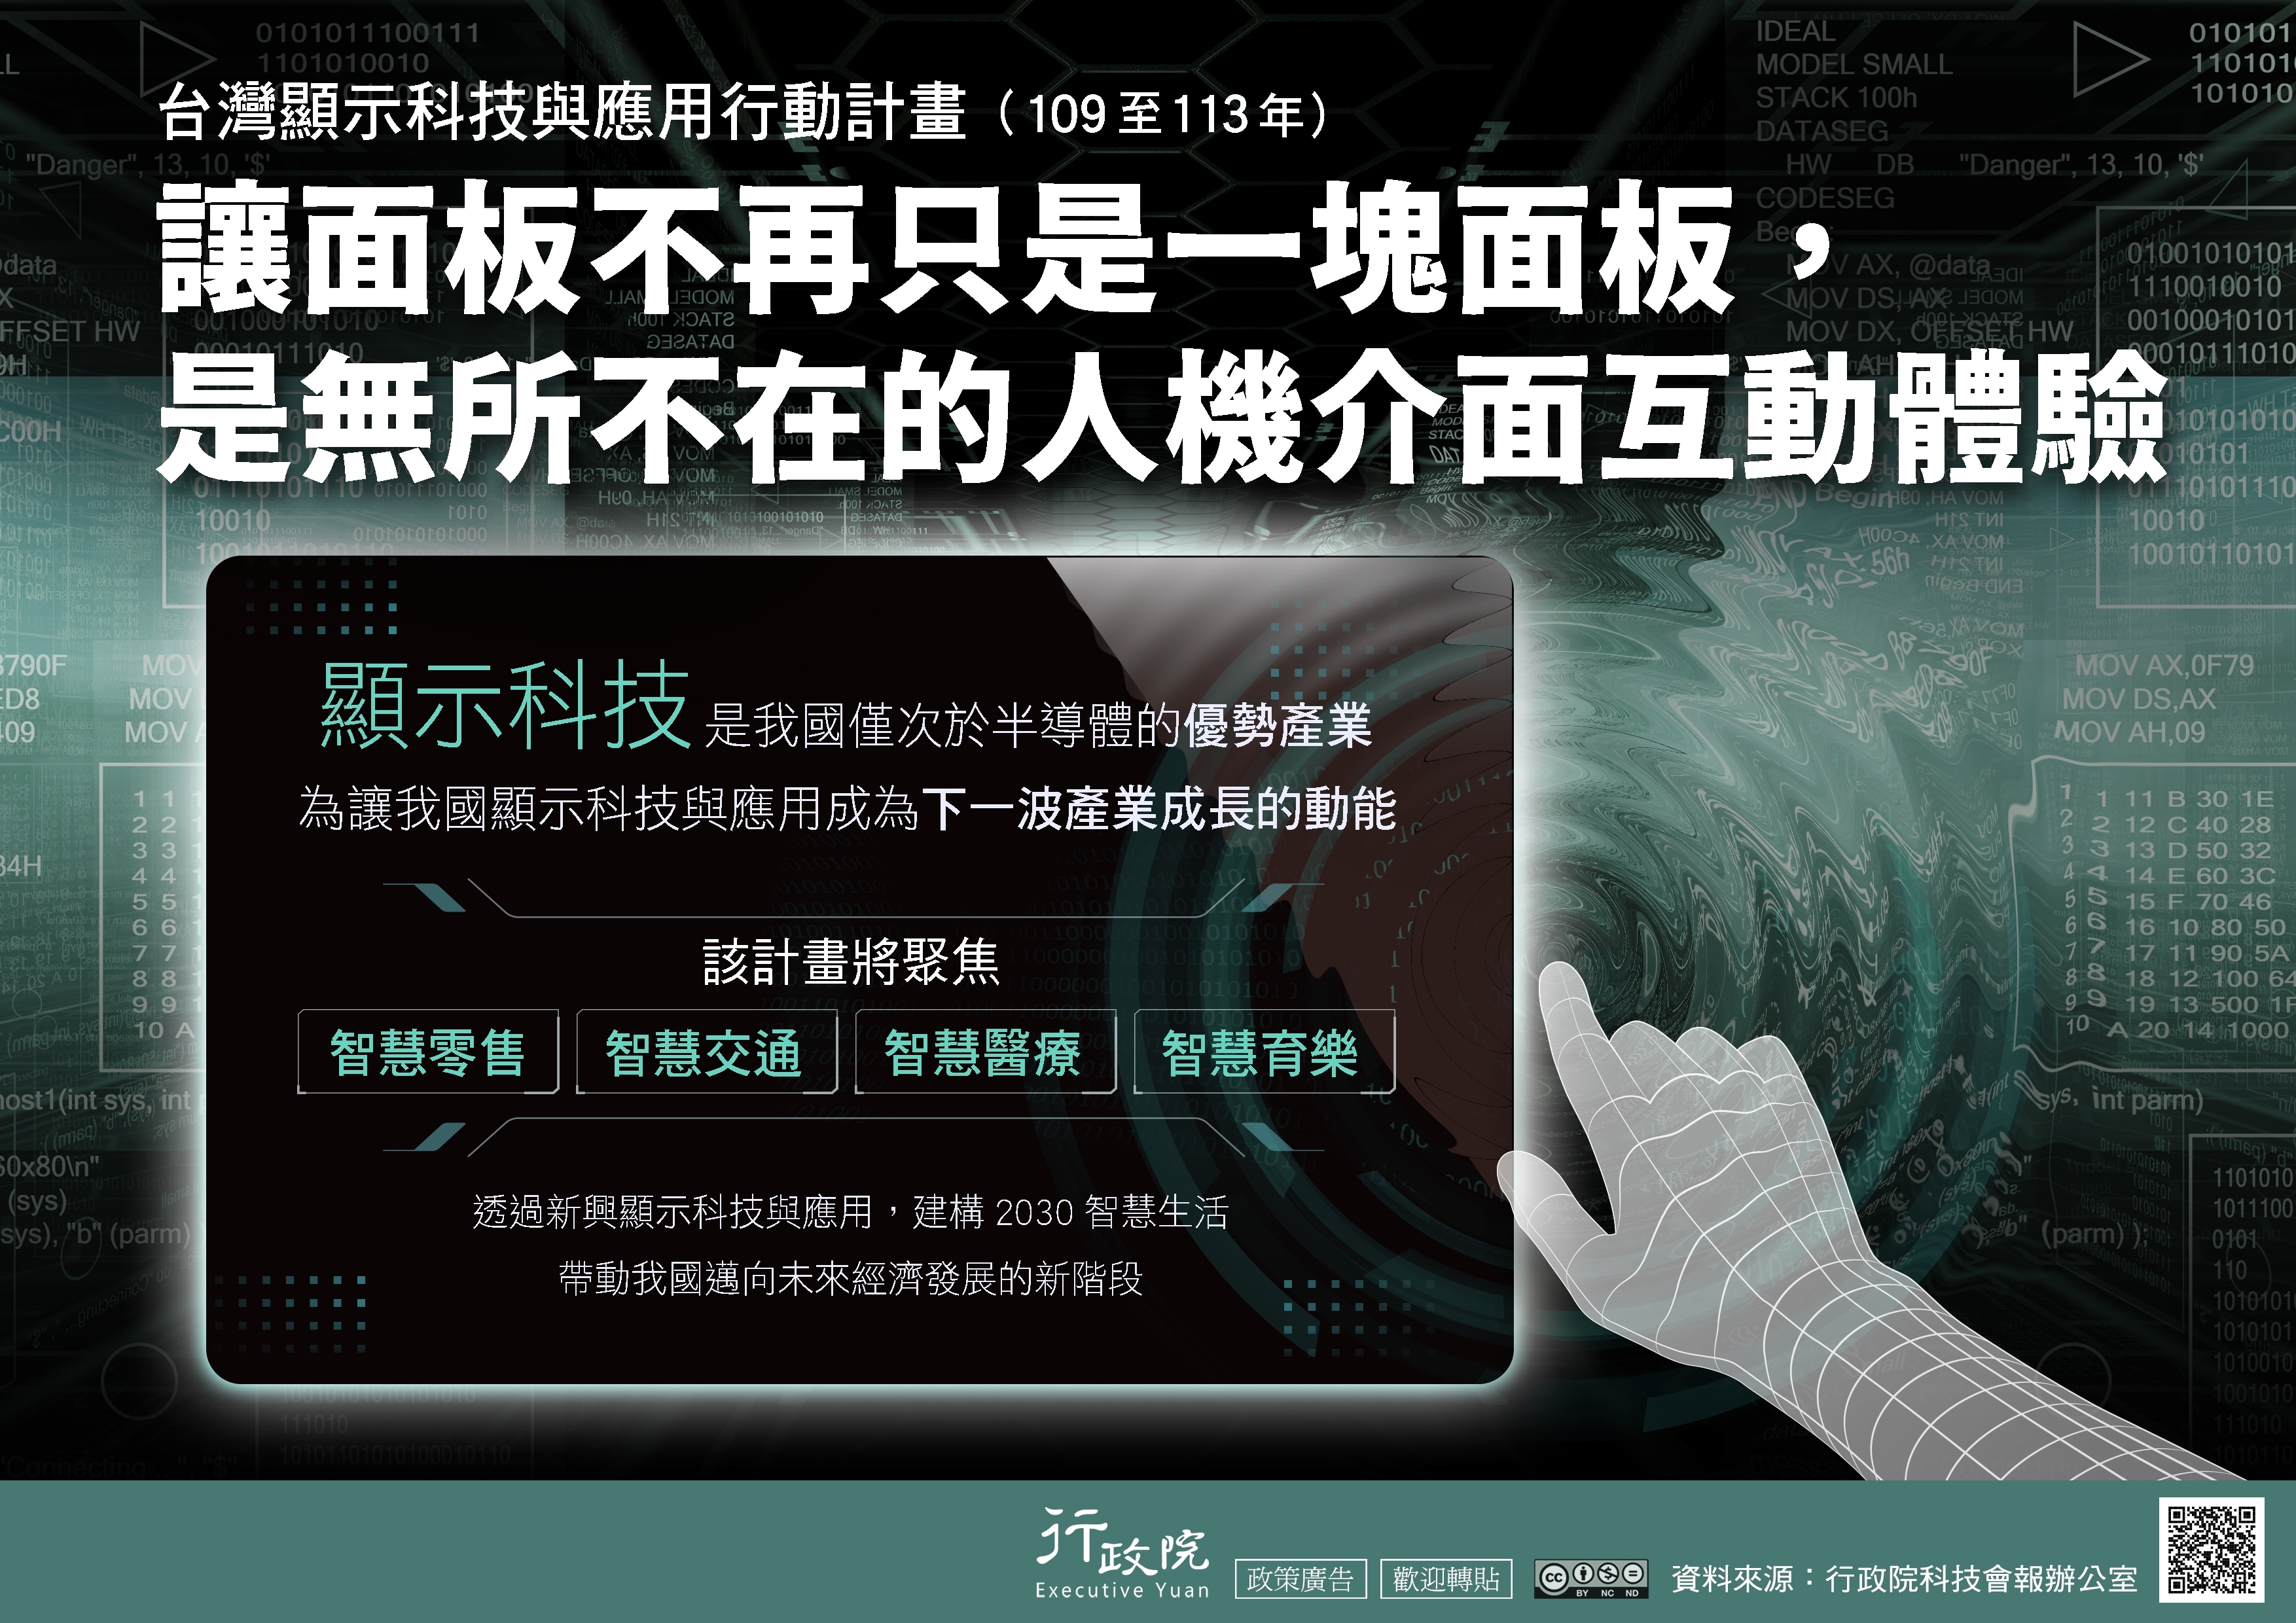 推廣「台灣顯示科技與應用行動計畫」政策溝通電子單張文宣